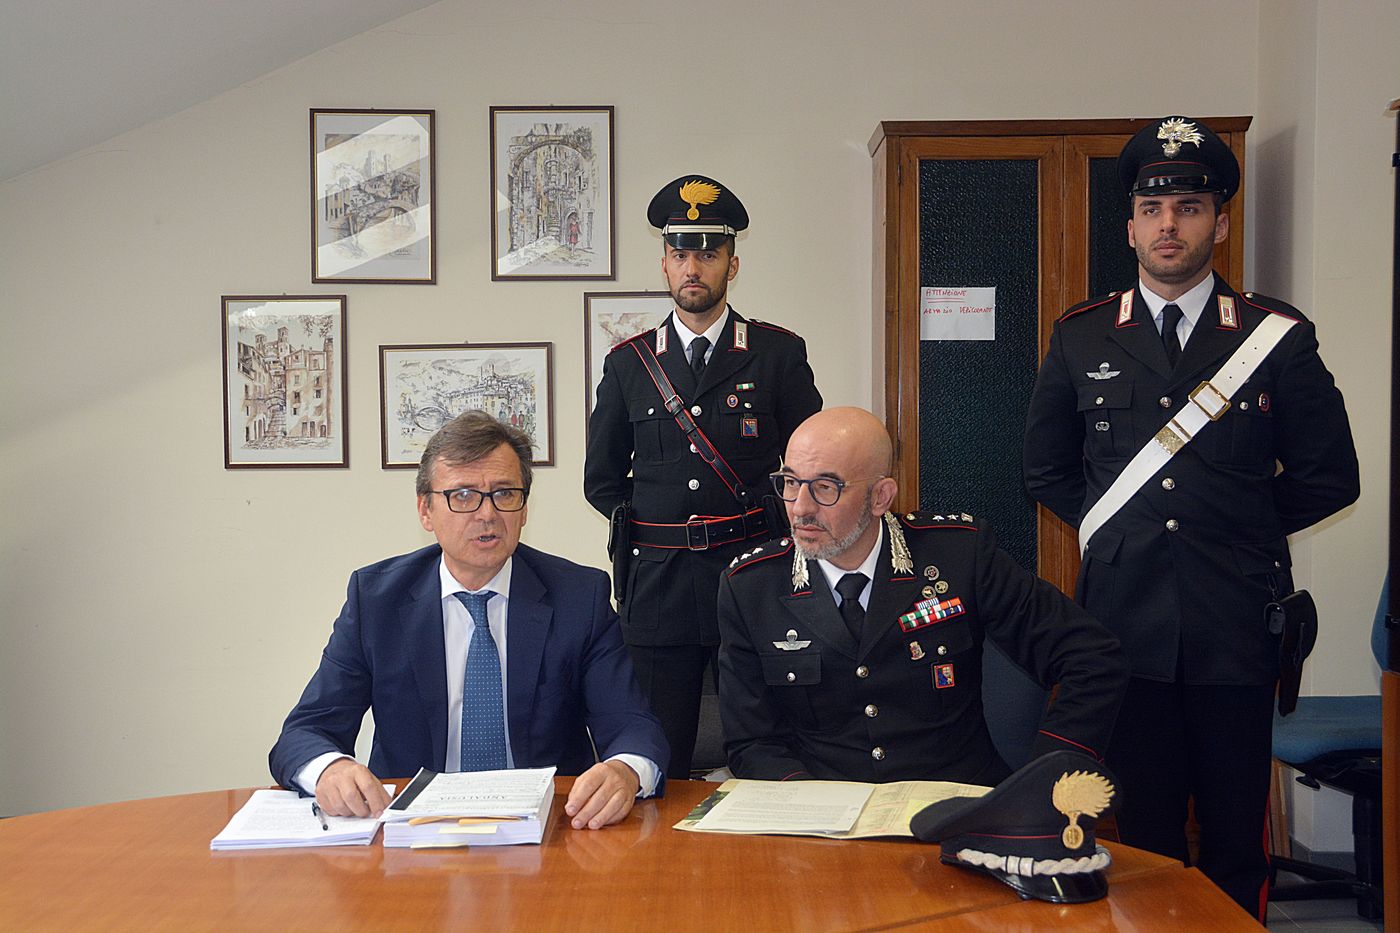 Operazione Arrestato trafficanti droga carabinieri Imperia